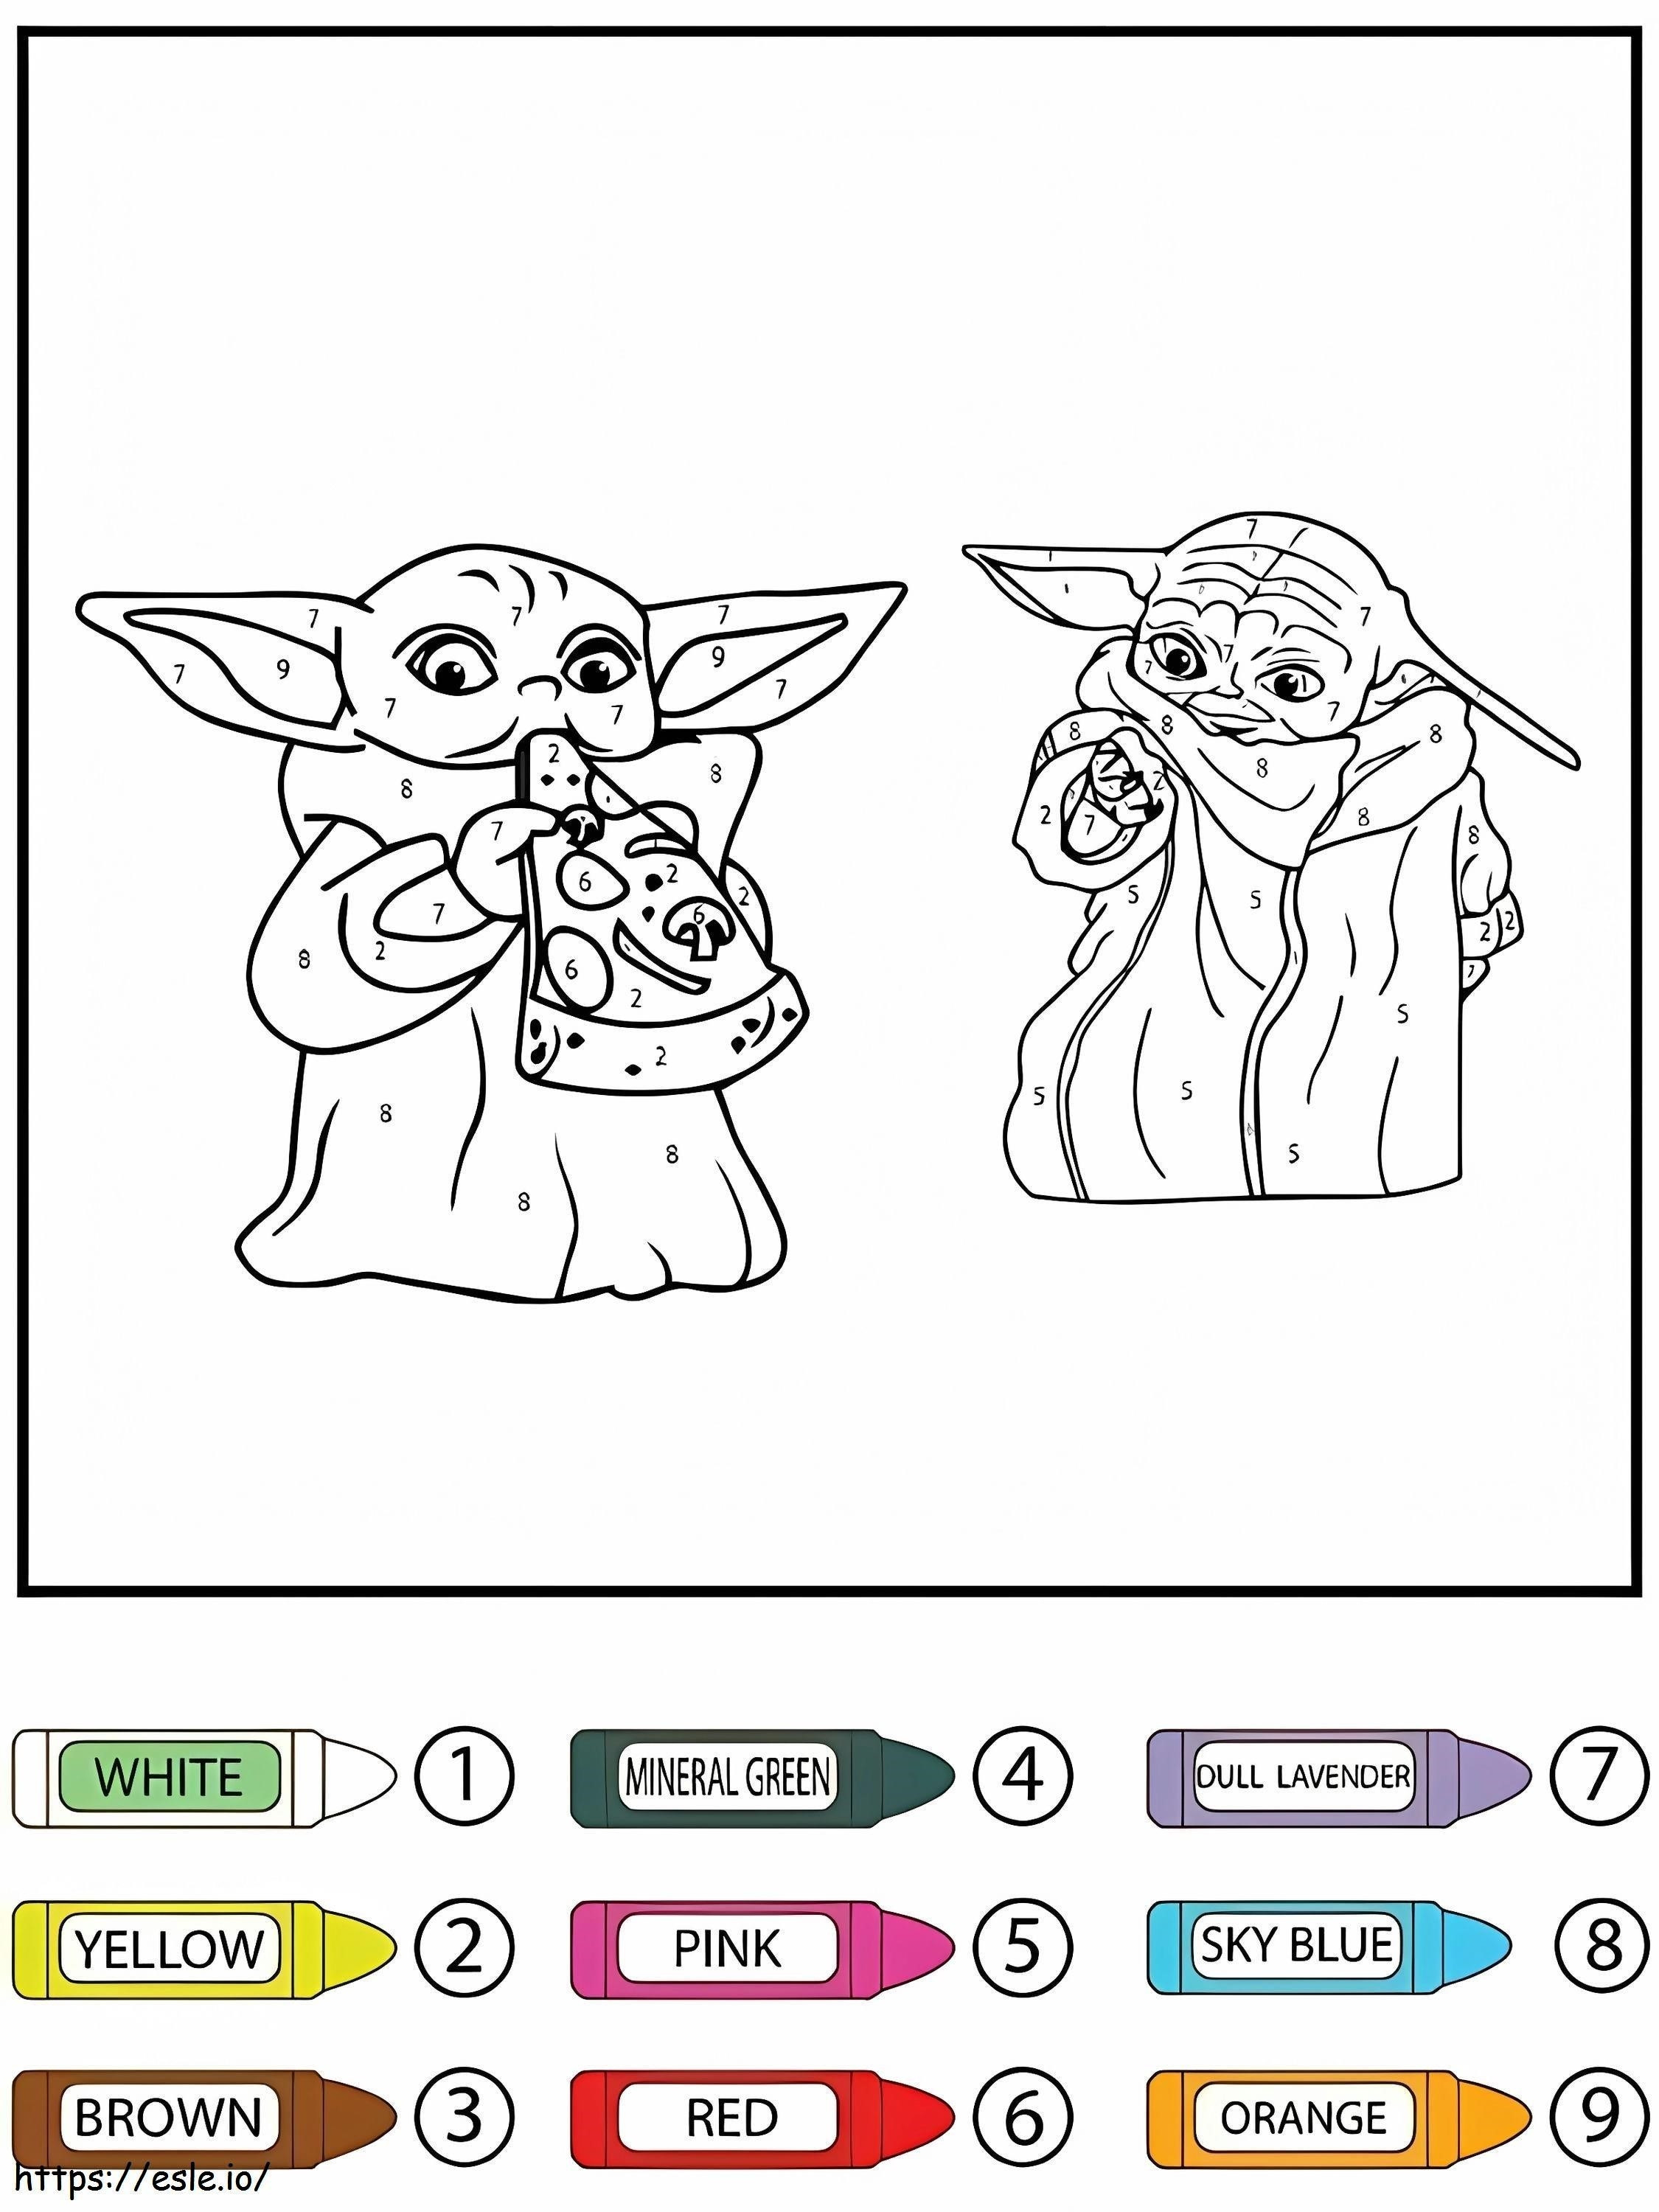 Star Wars Grogu és Baby Yoda étkezési színek szám szerint kifestő